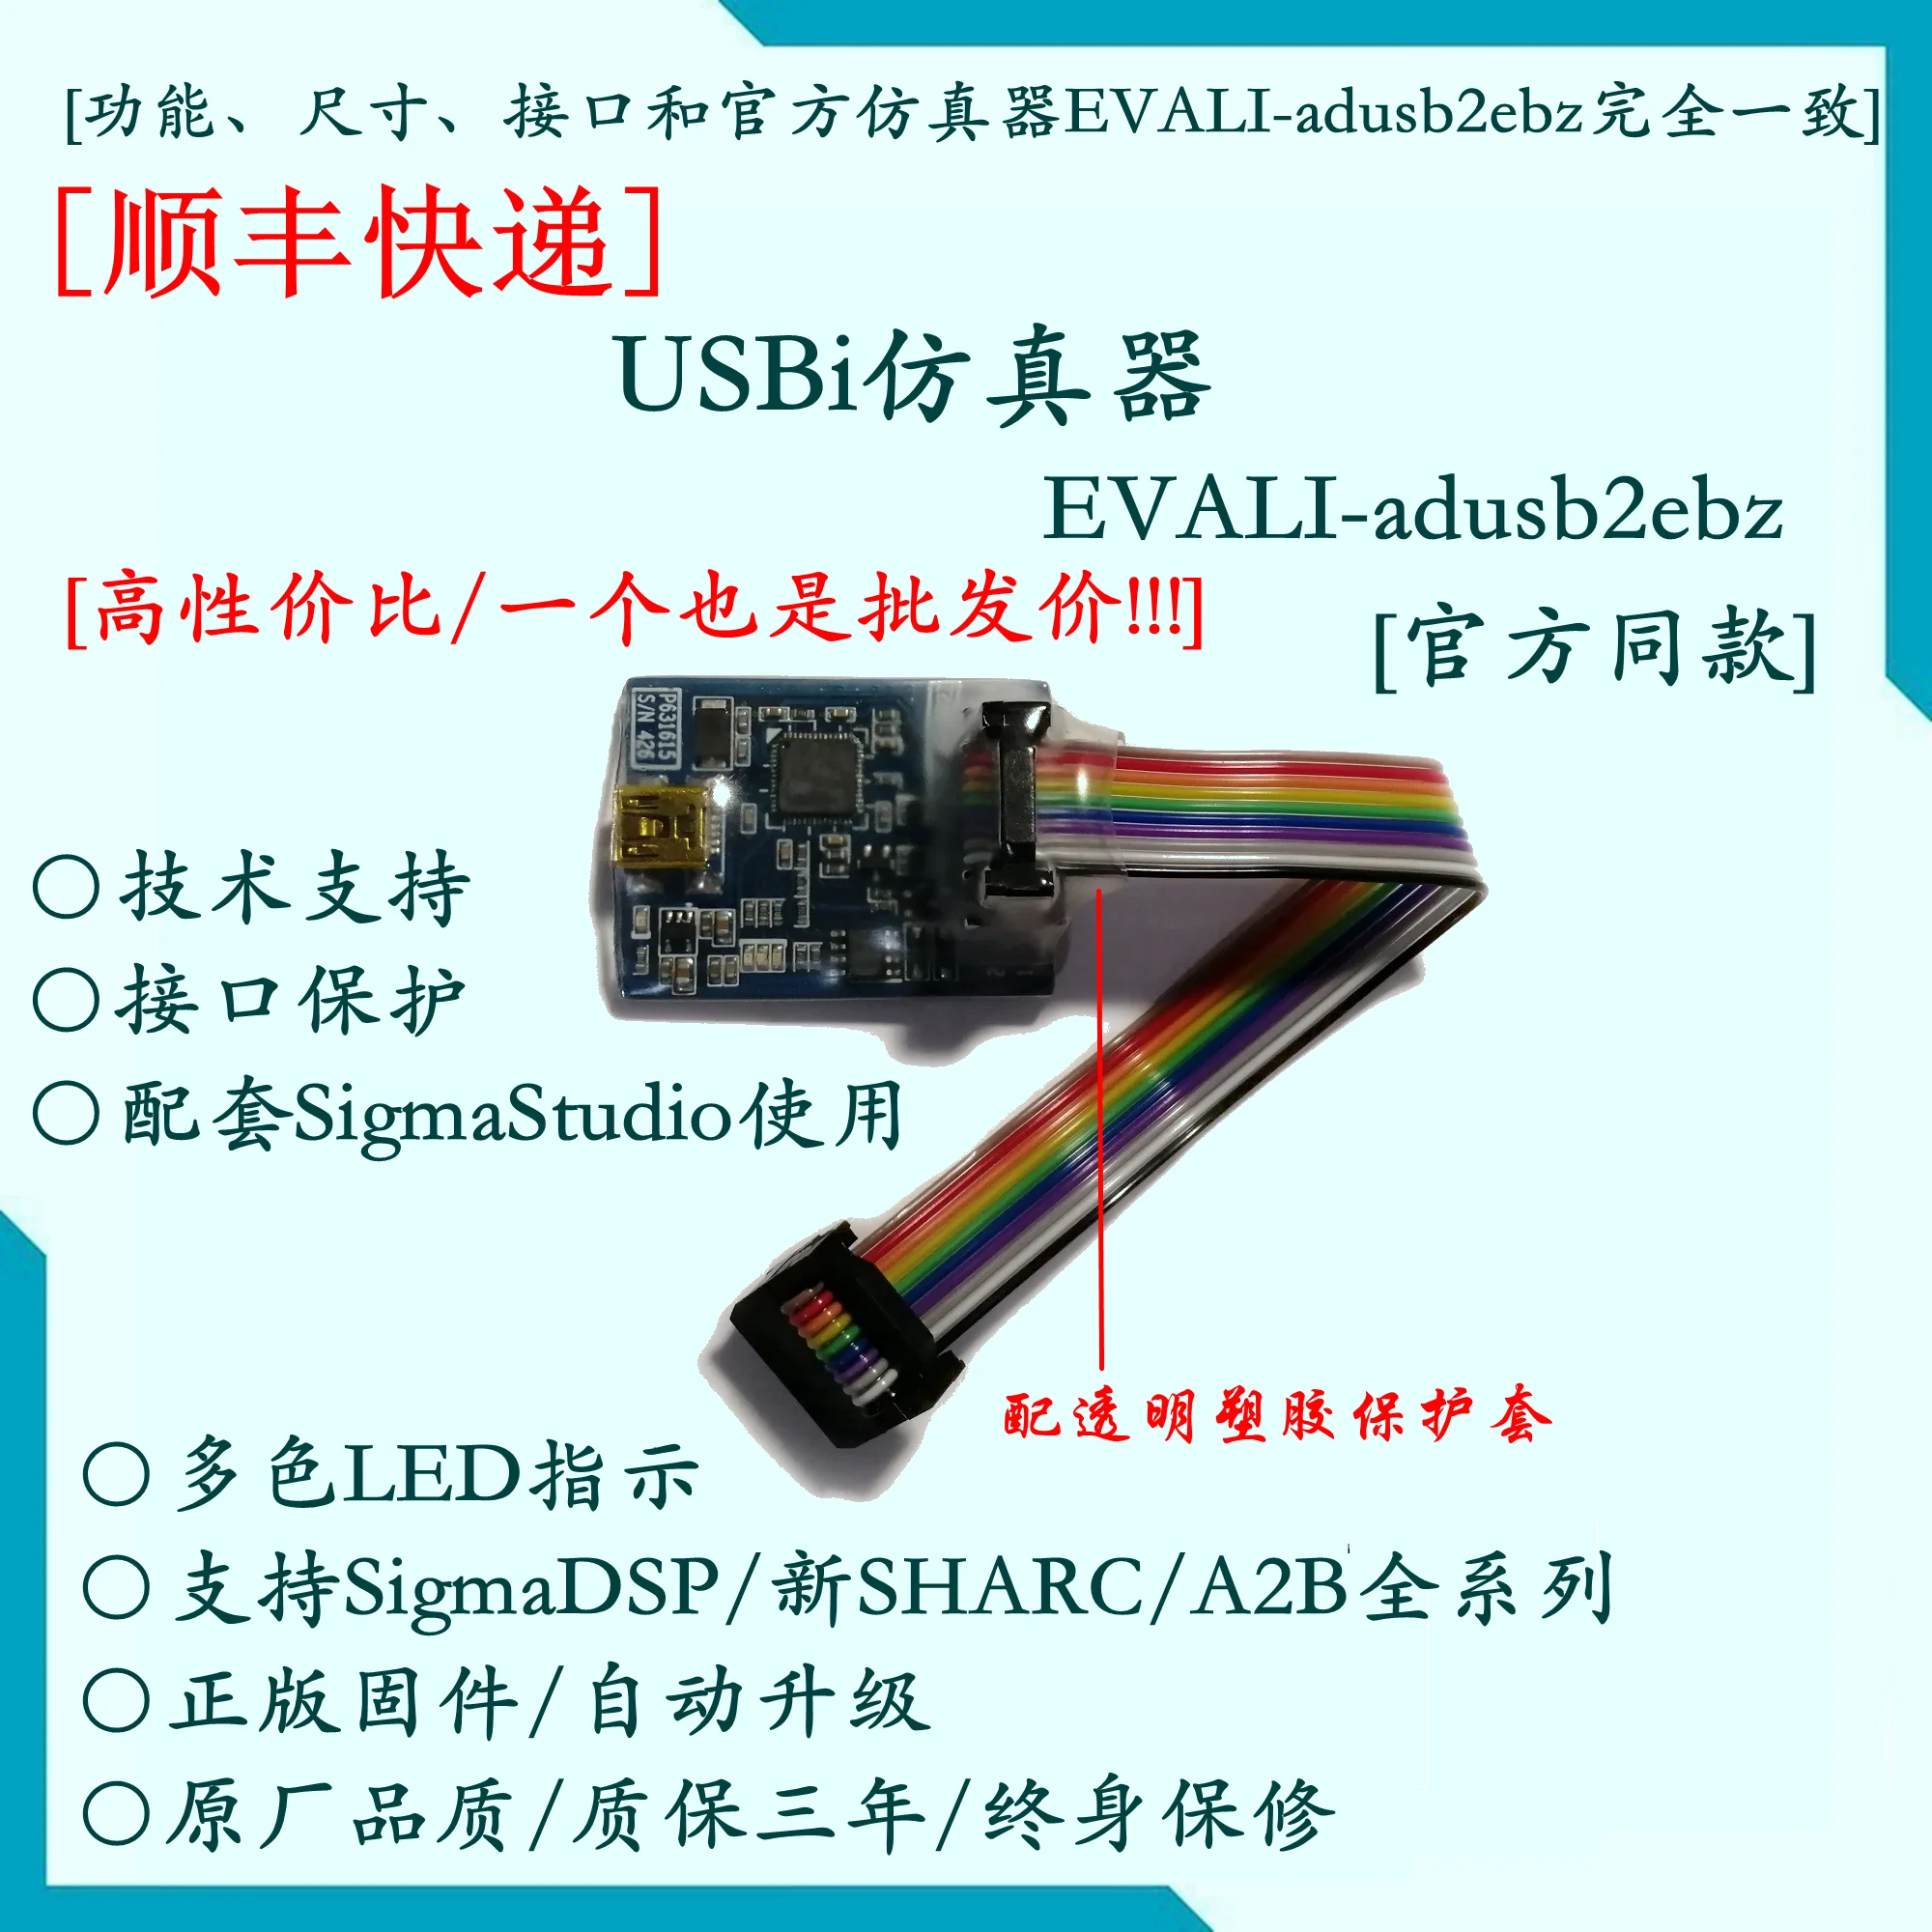 

USBi Emulator / SigmaDSP Emulator / ADAU1701 / ADAU1401 / EVAL-ADUSB2EBZ